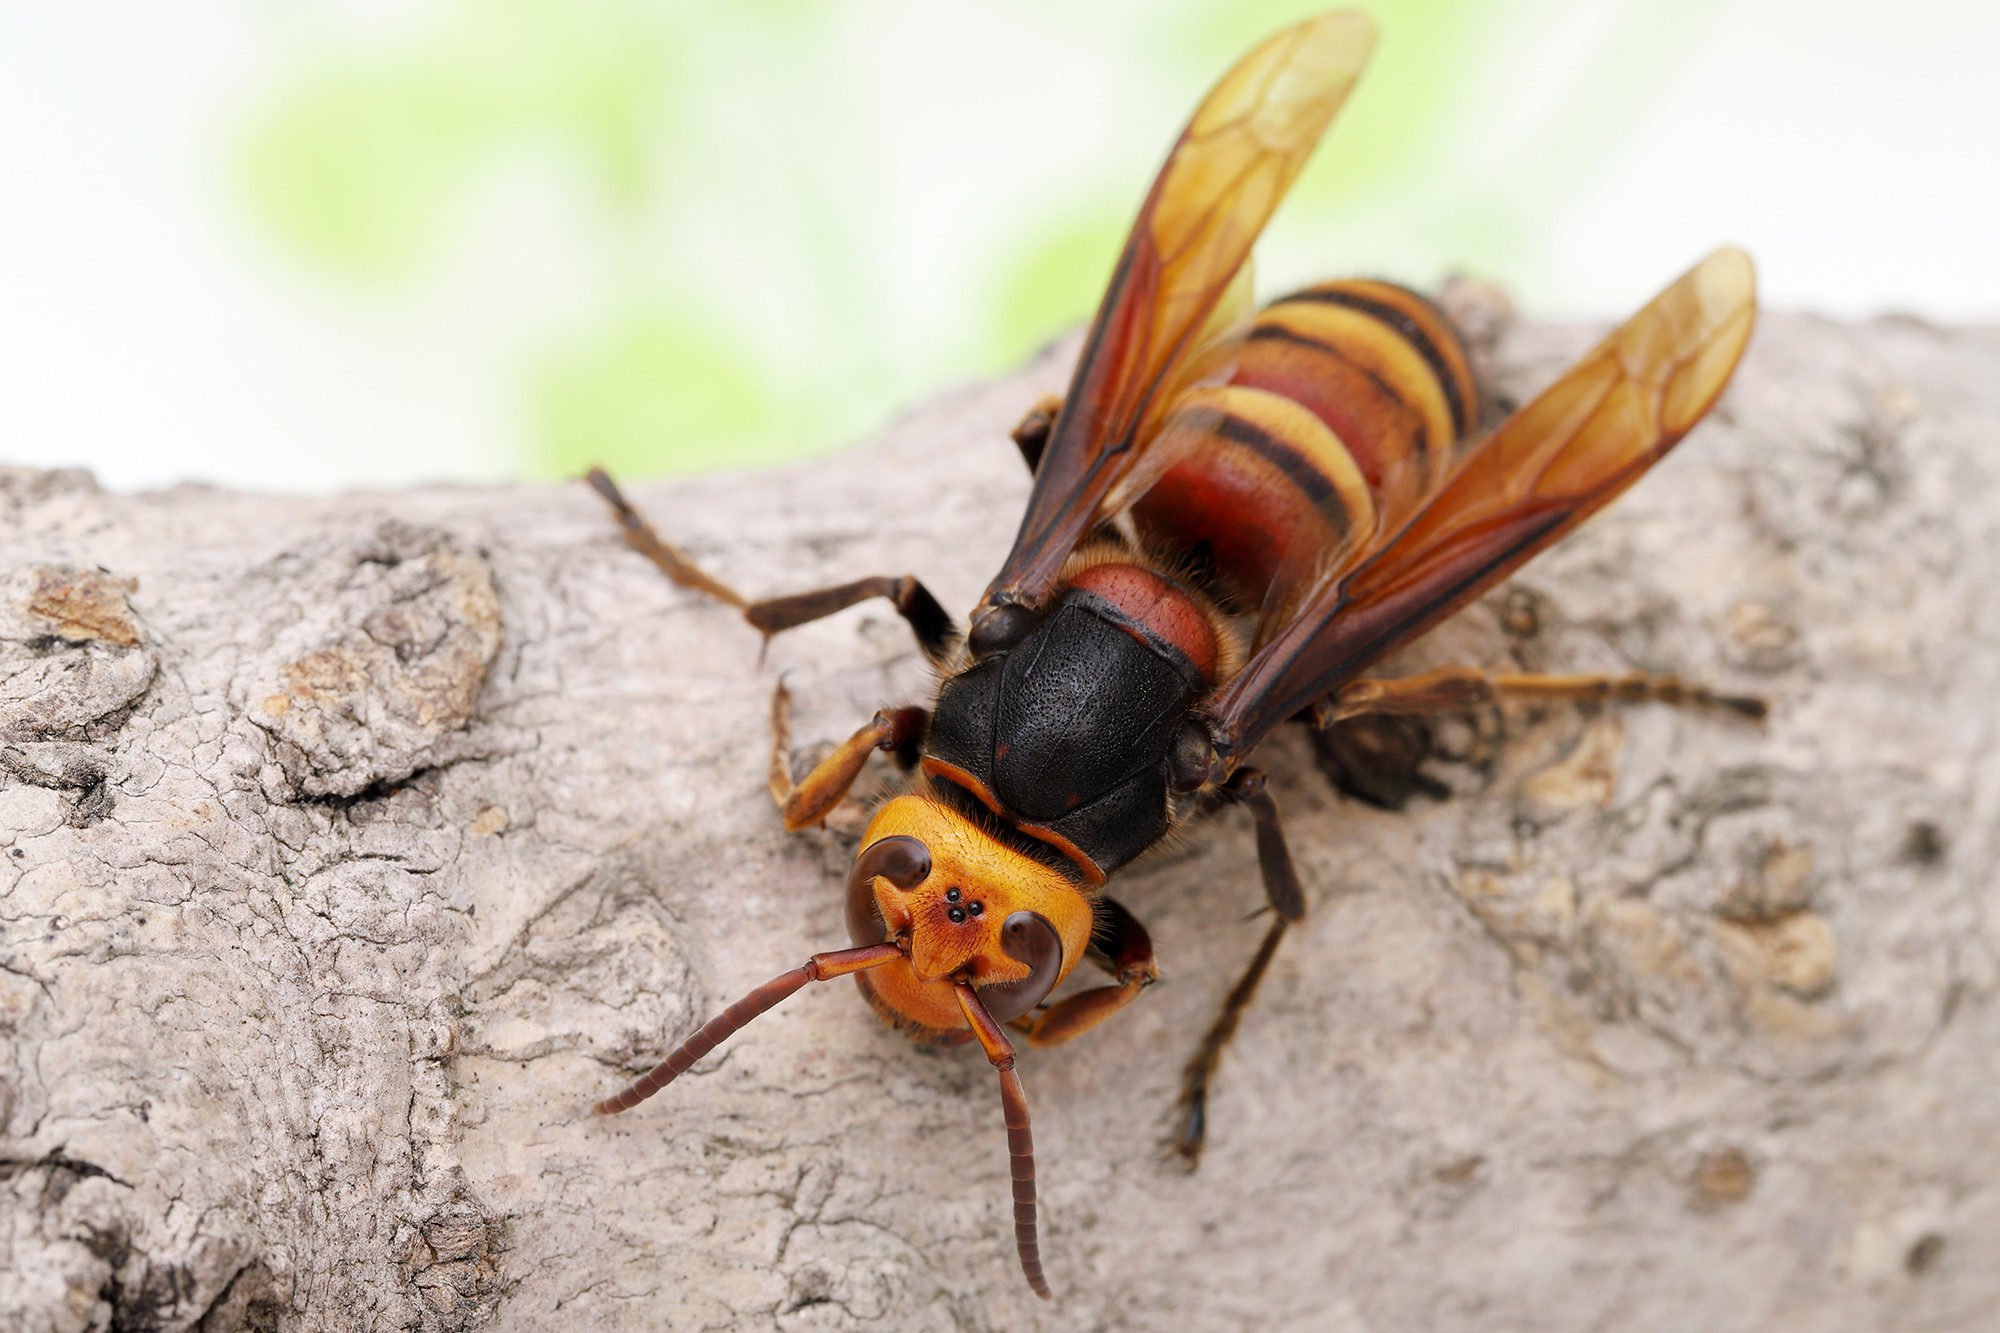 Asian giant hornet